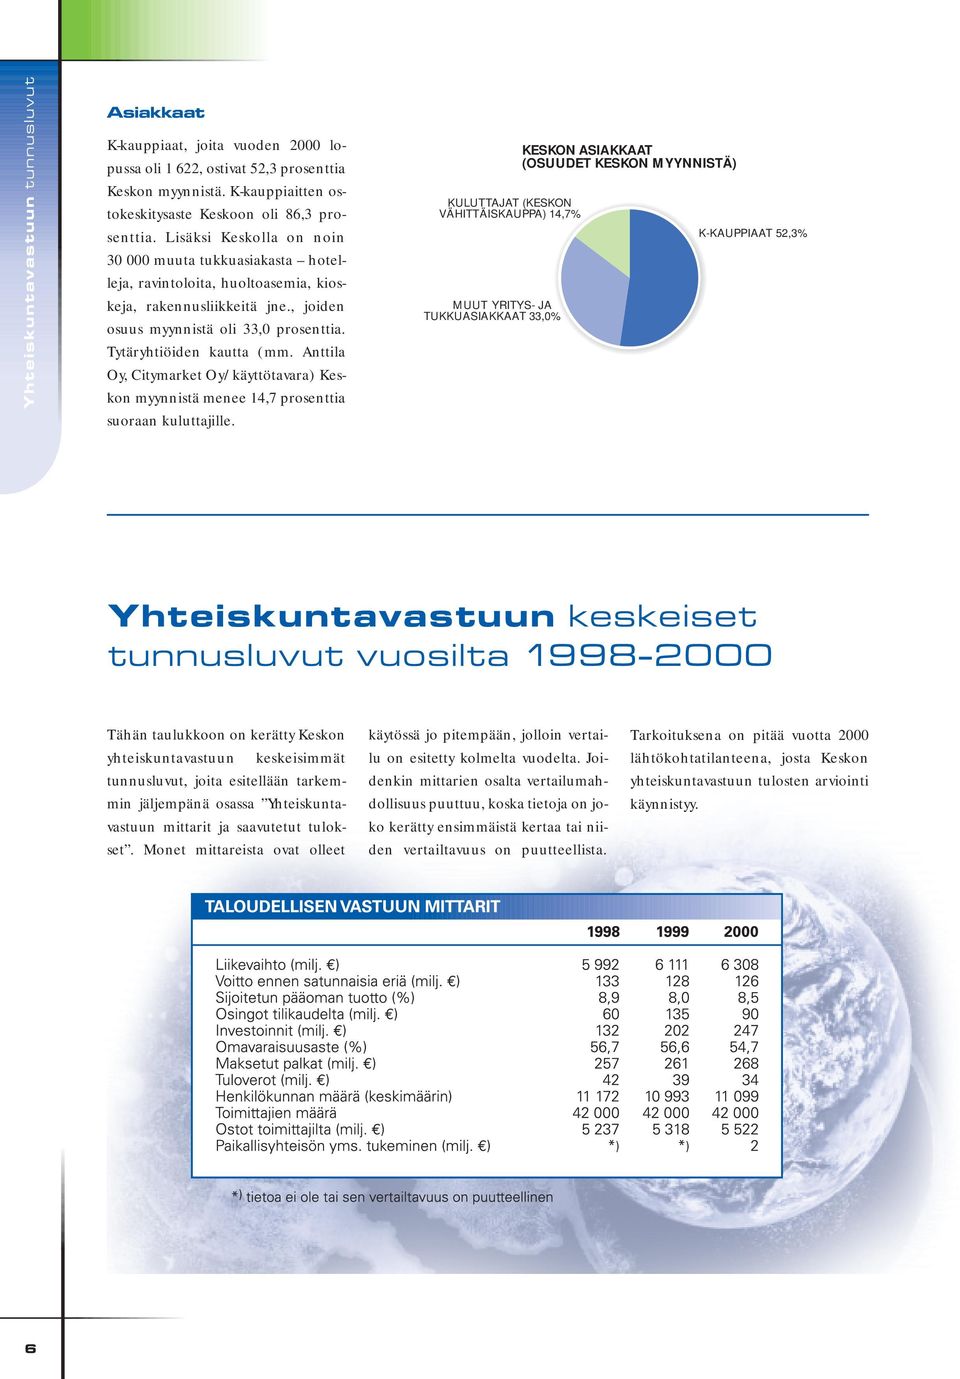 Anttila Oy, Citymarket Oy/käyttötavara) Keskon myynnistä menee 14,7 prosenttia suoraan kuluttajille.